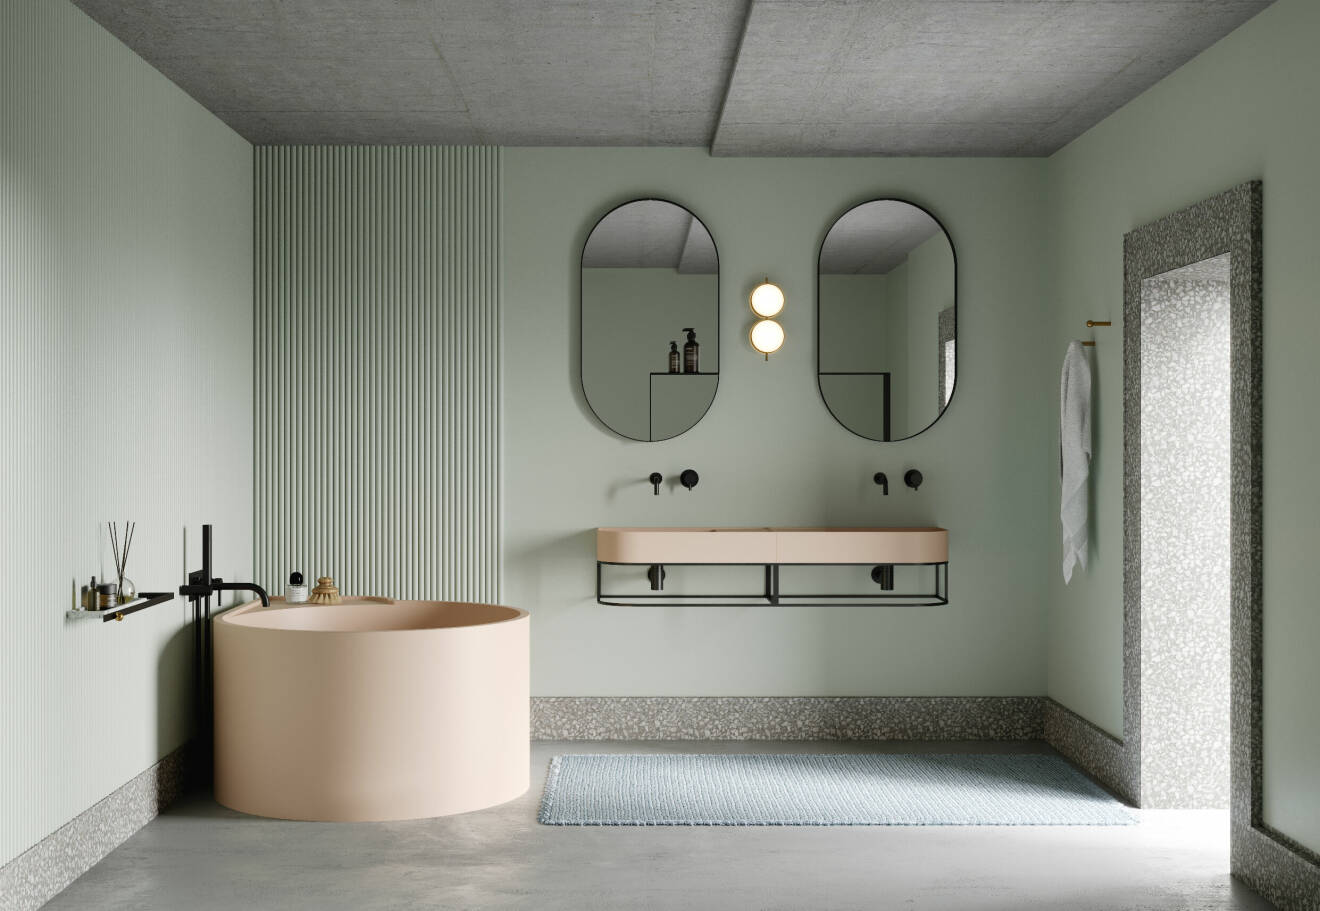 trendig badrumsinspiration med pastellfärger och svarta detaljer